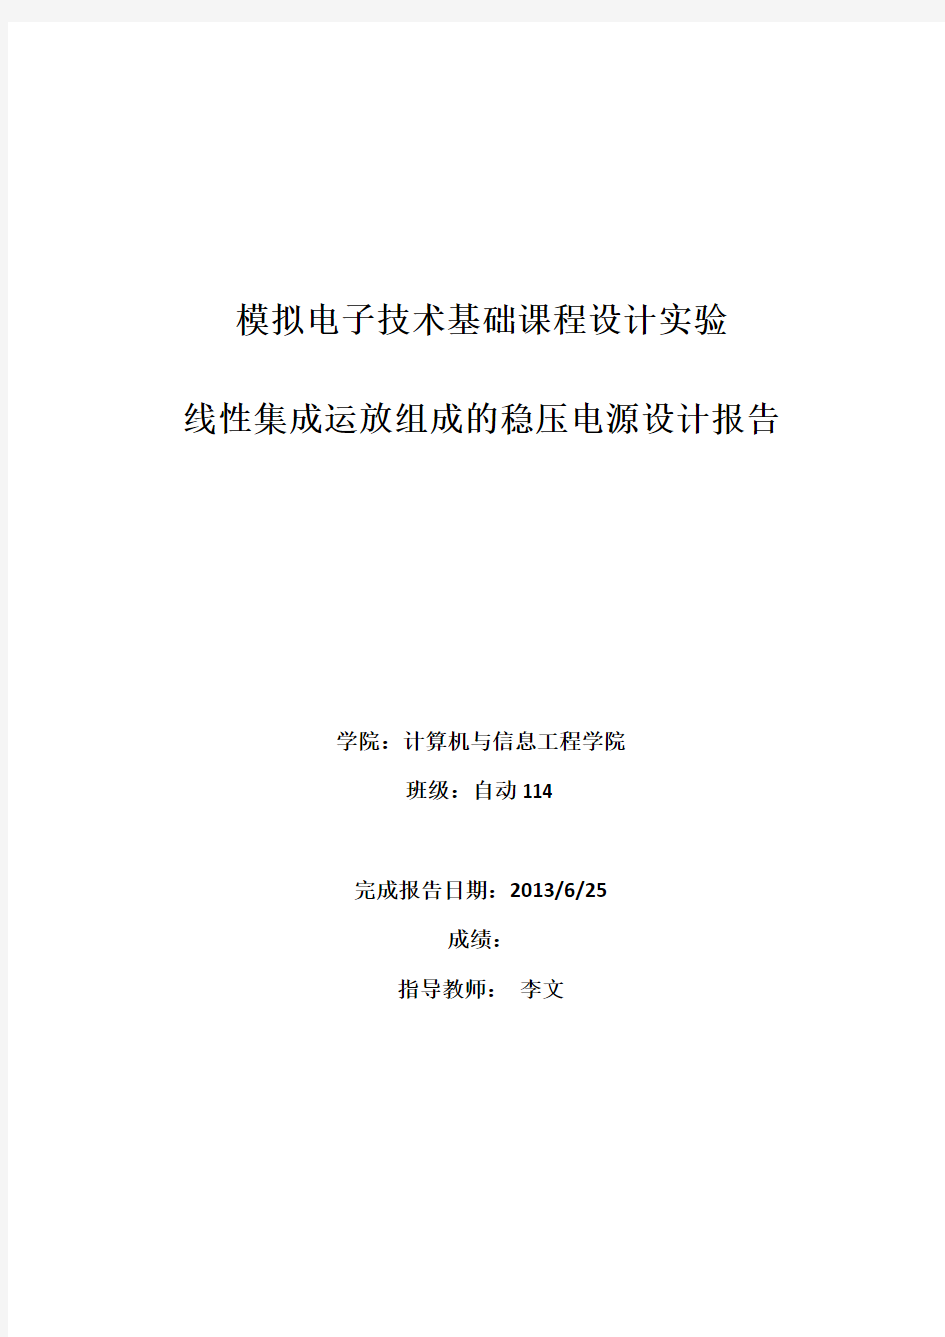 北京工商大学 模电实验报告